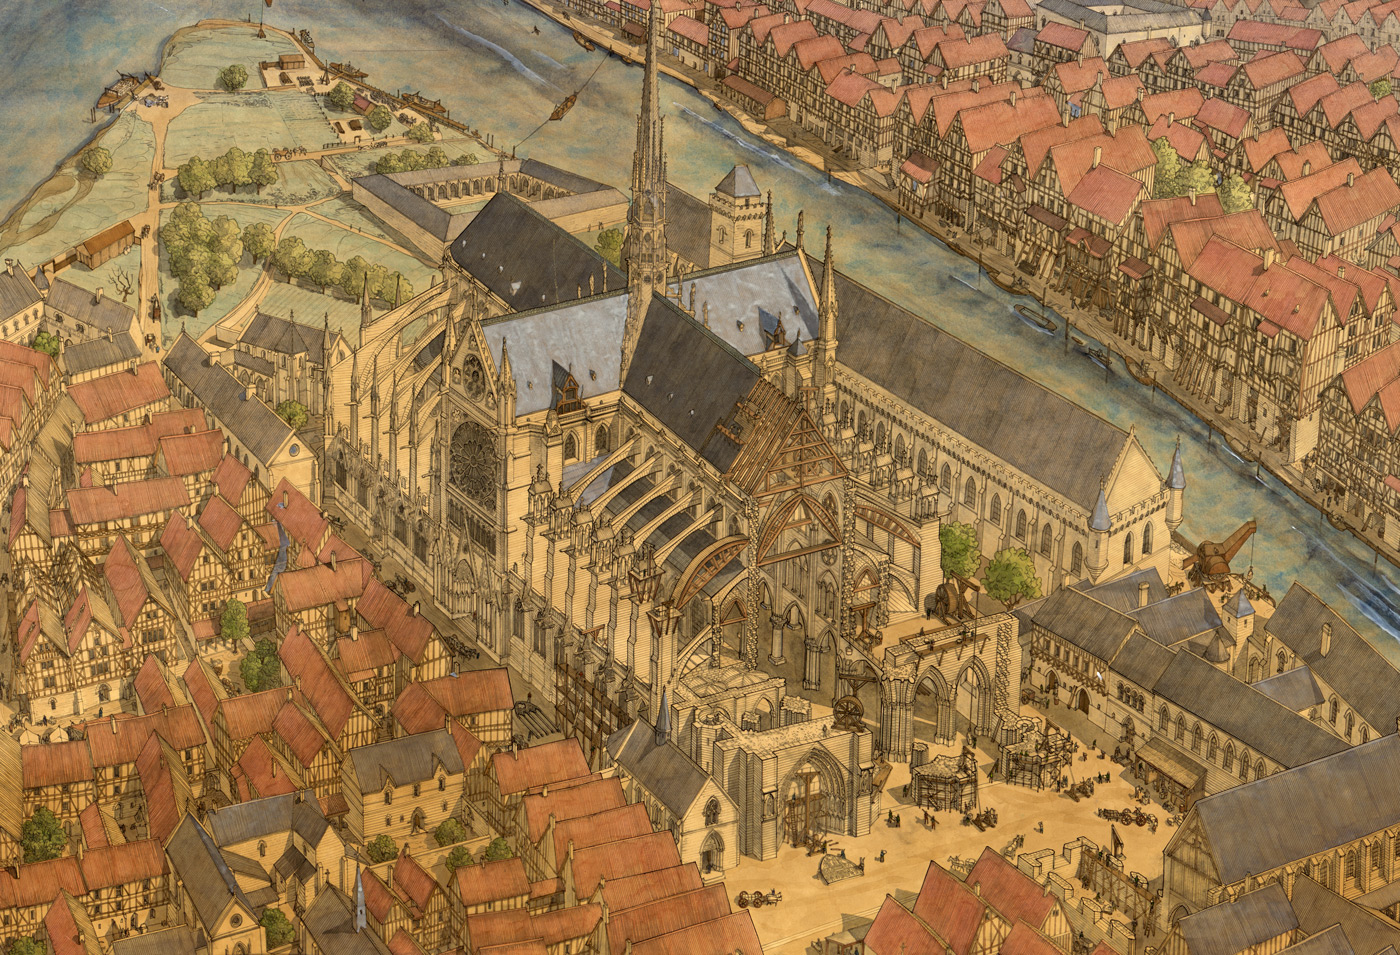 Франция 10 век. 15 Век Франция средневековье. Средневековый Париж 15 век. Средневековый город Франции 12 век.